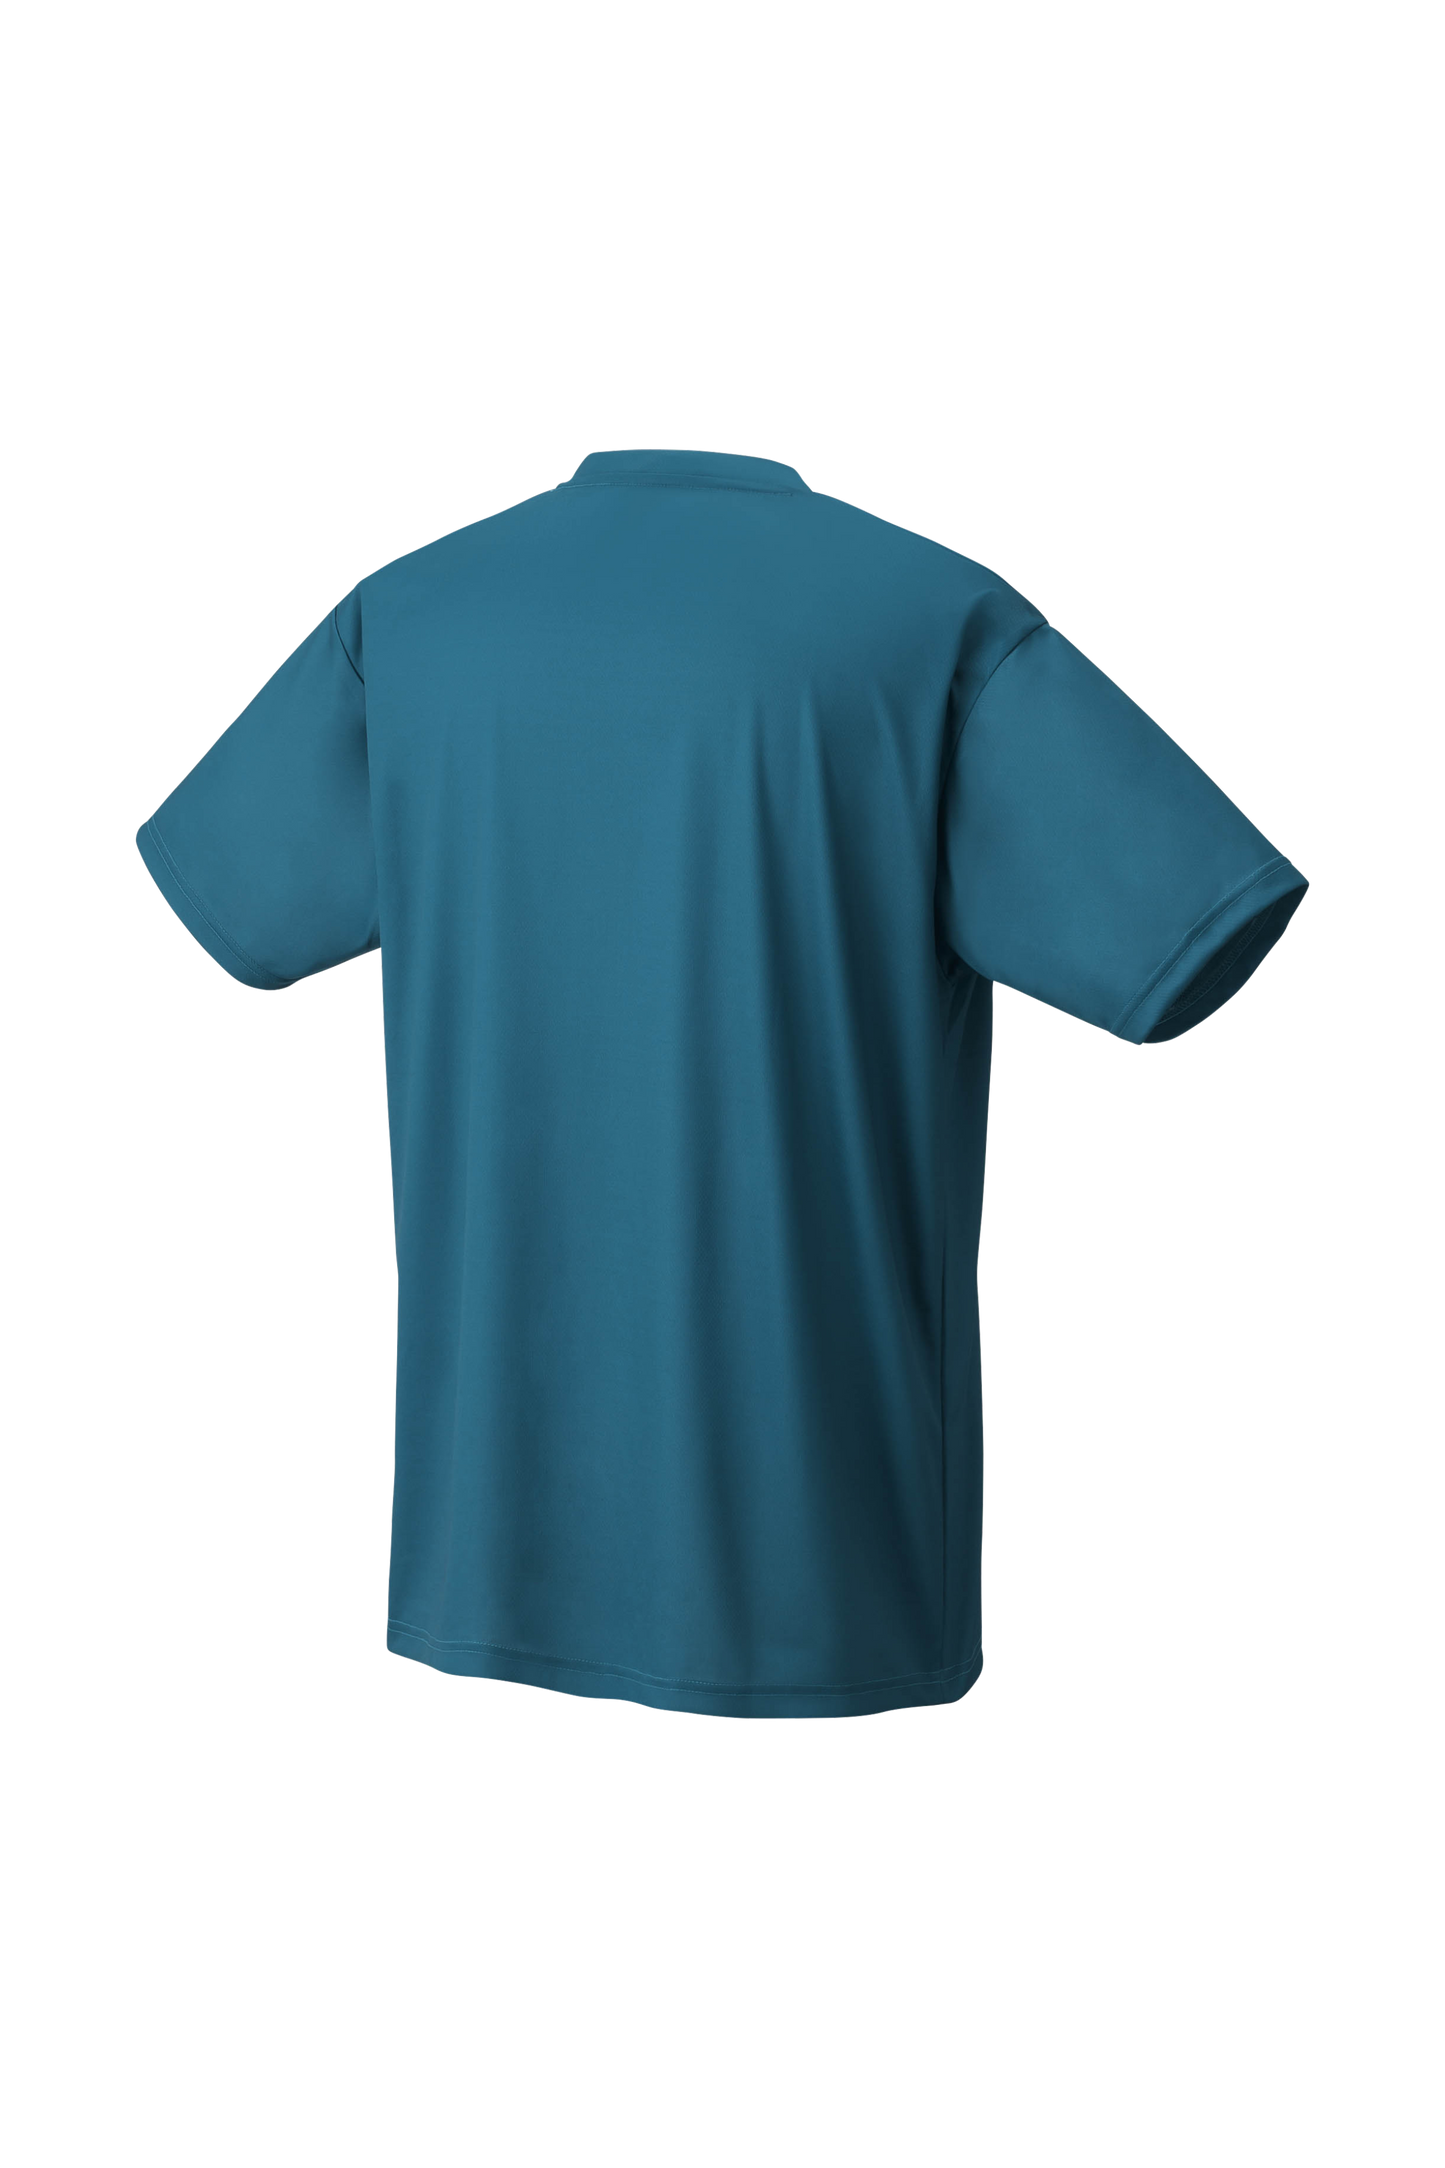 YONEX Unisex T-Shirts YM0045 - Max Sports